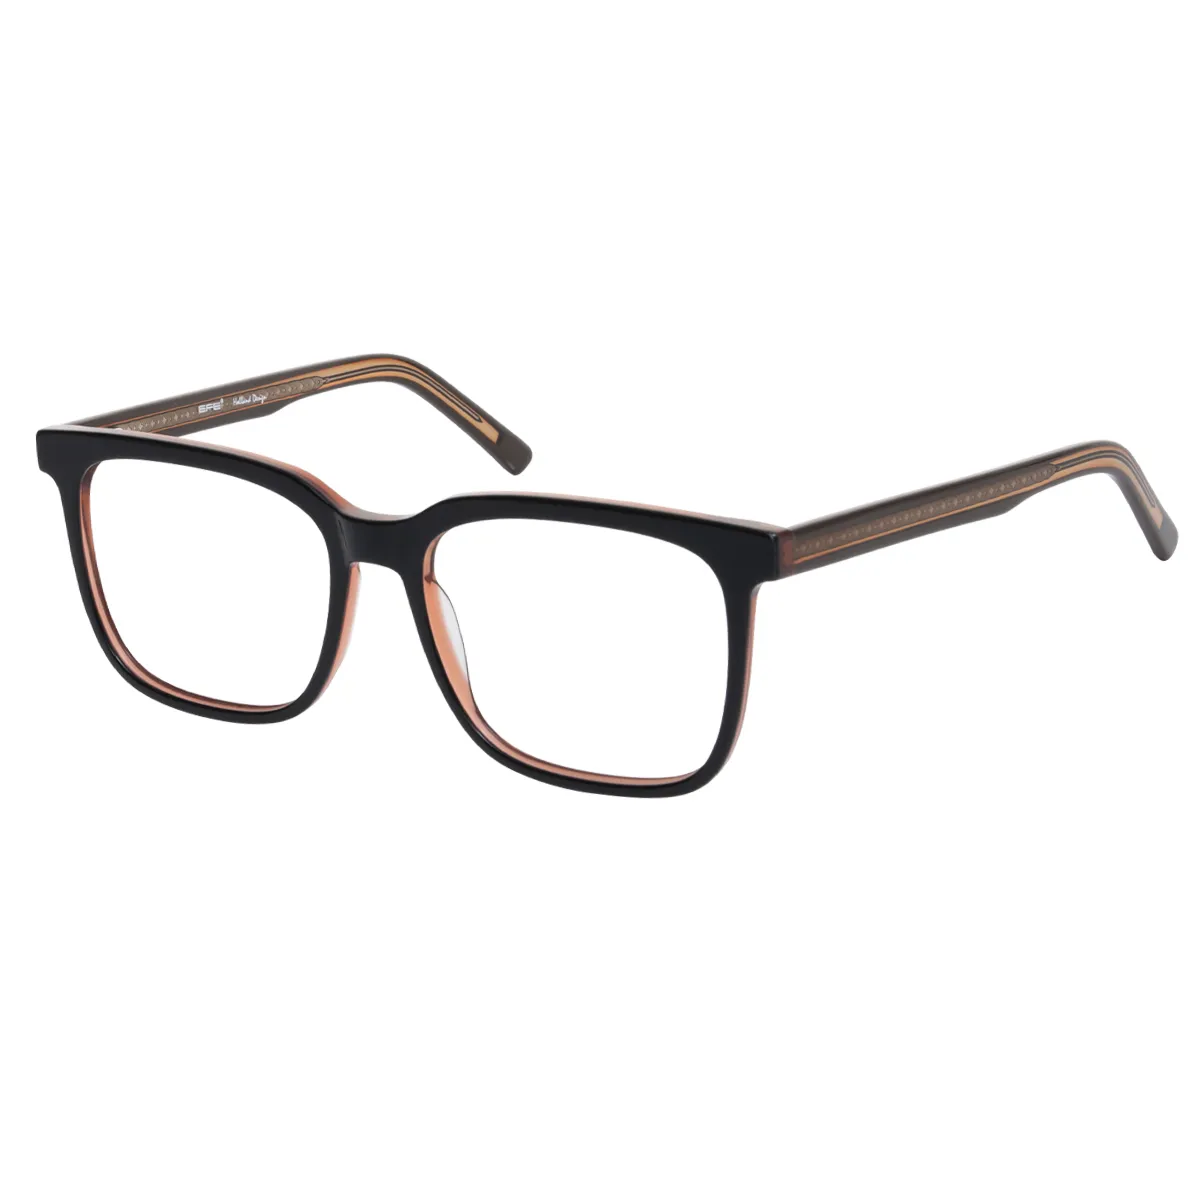 Bob - Square Black-orange Glasses for Men